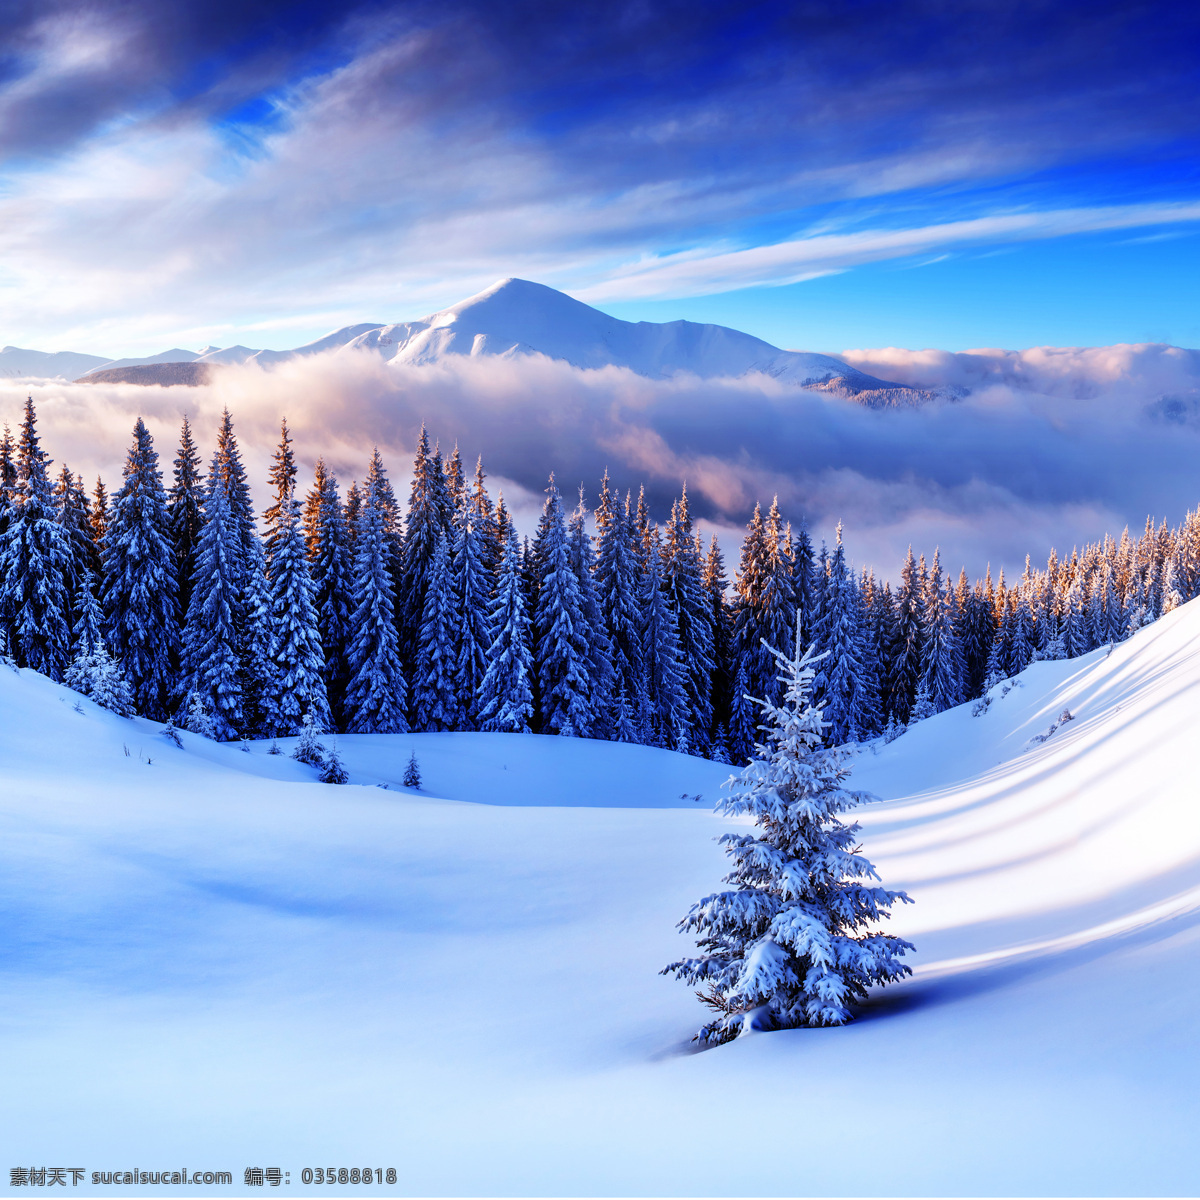 美丽 雪地 树木 风景 冬季美景 美丽风景 漂亮景色 风景摄影 雪地风景 自然风景 山水风景 风景图片